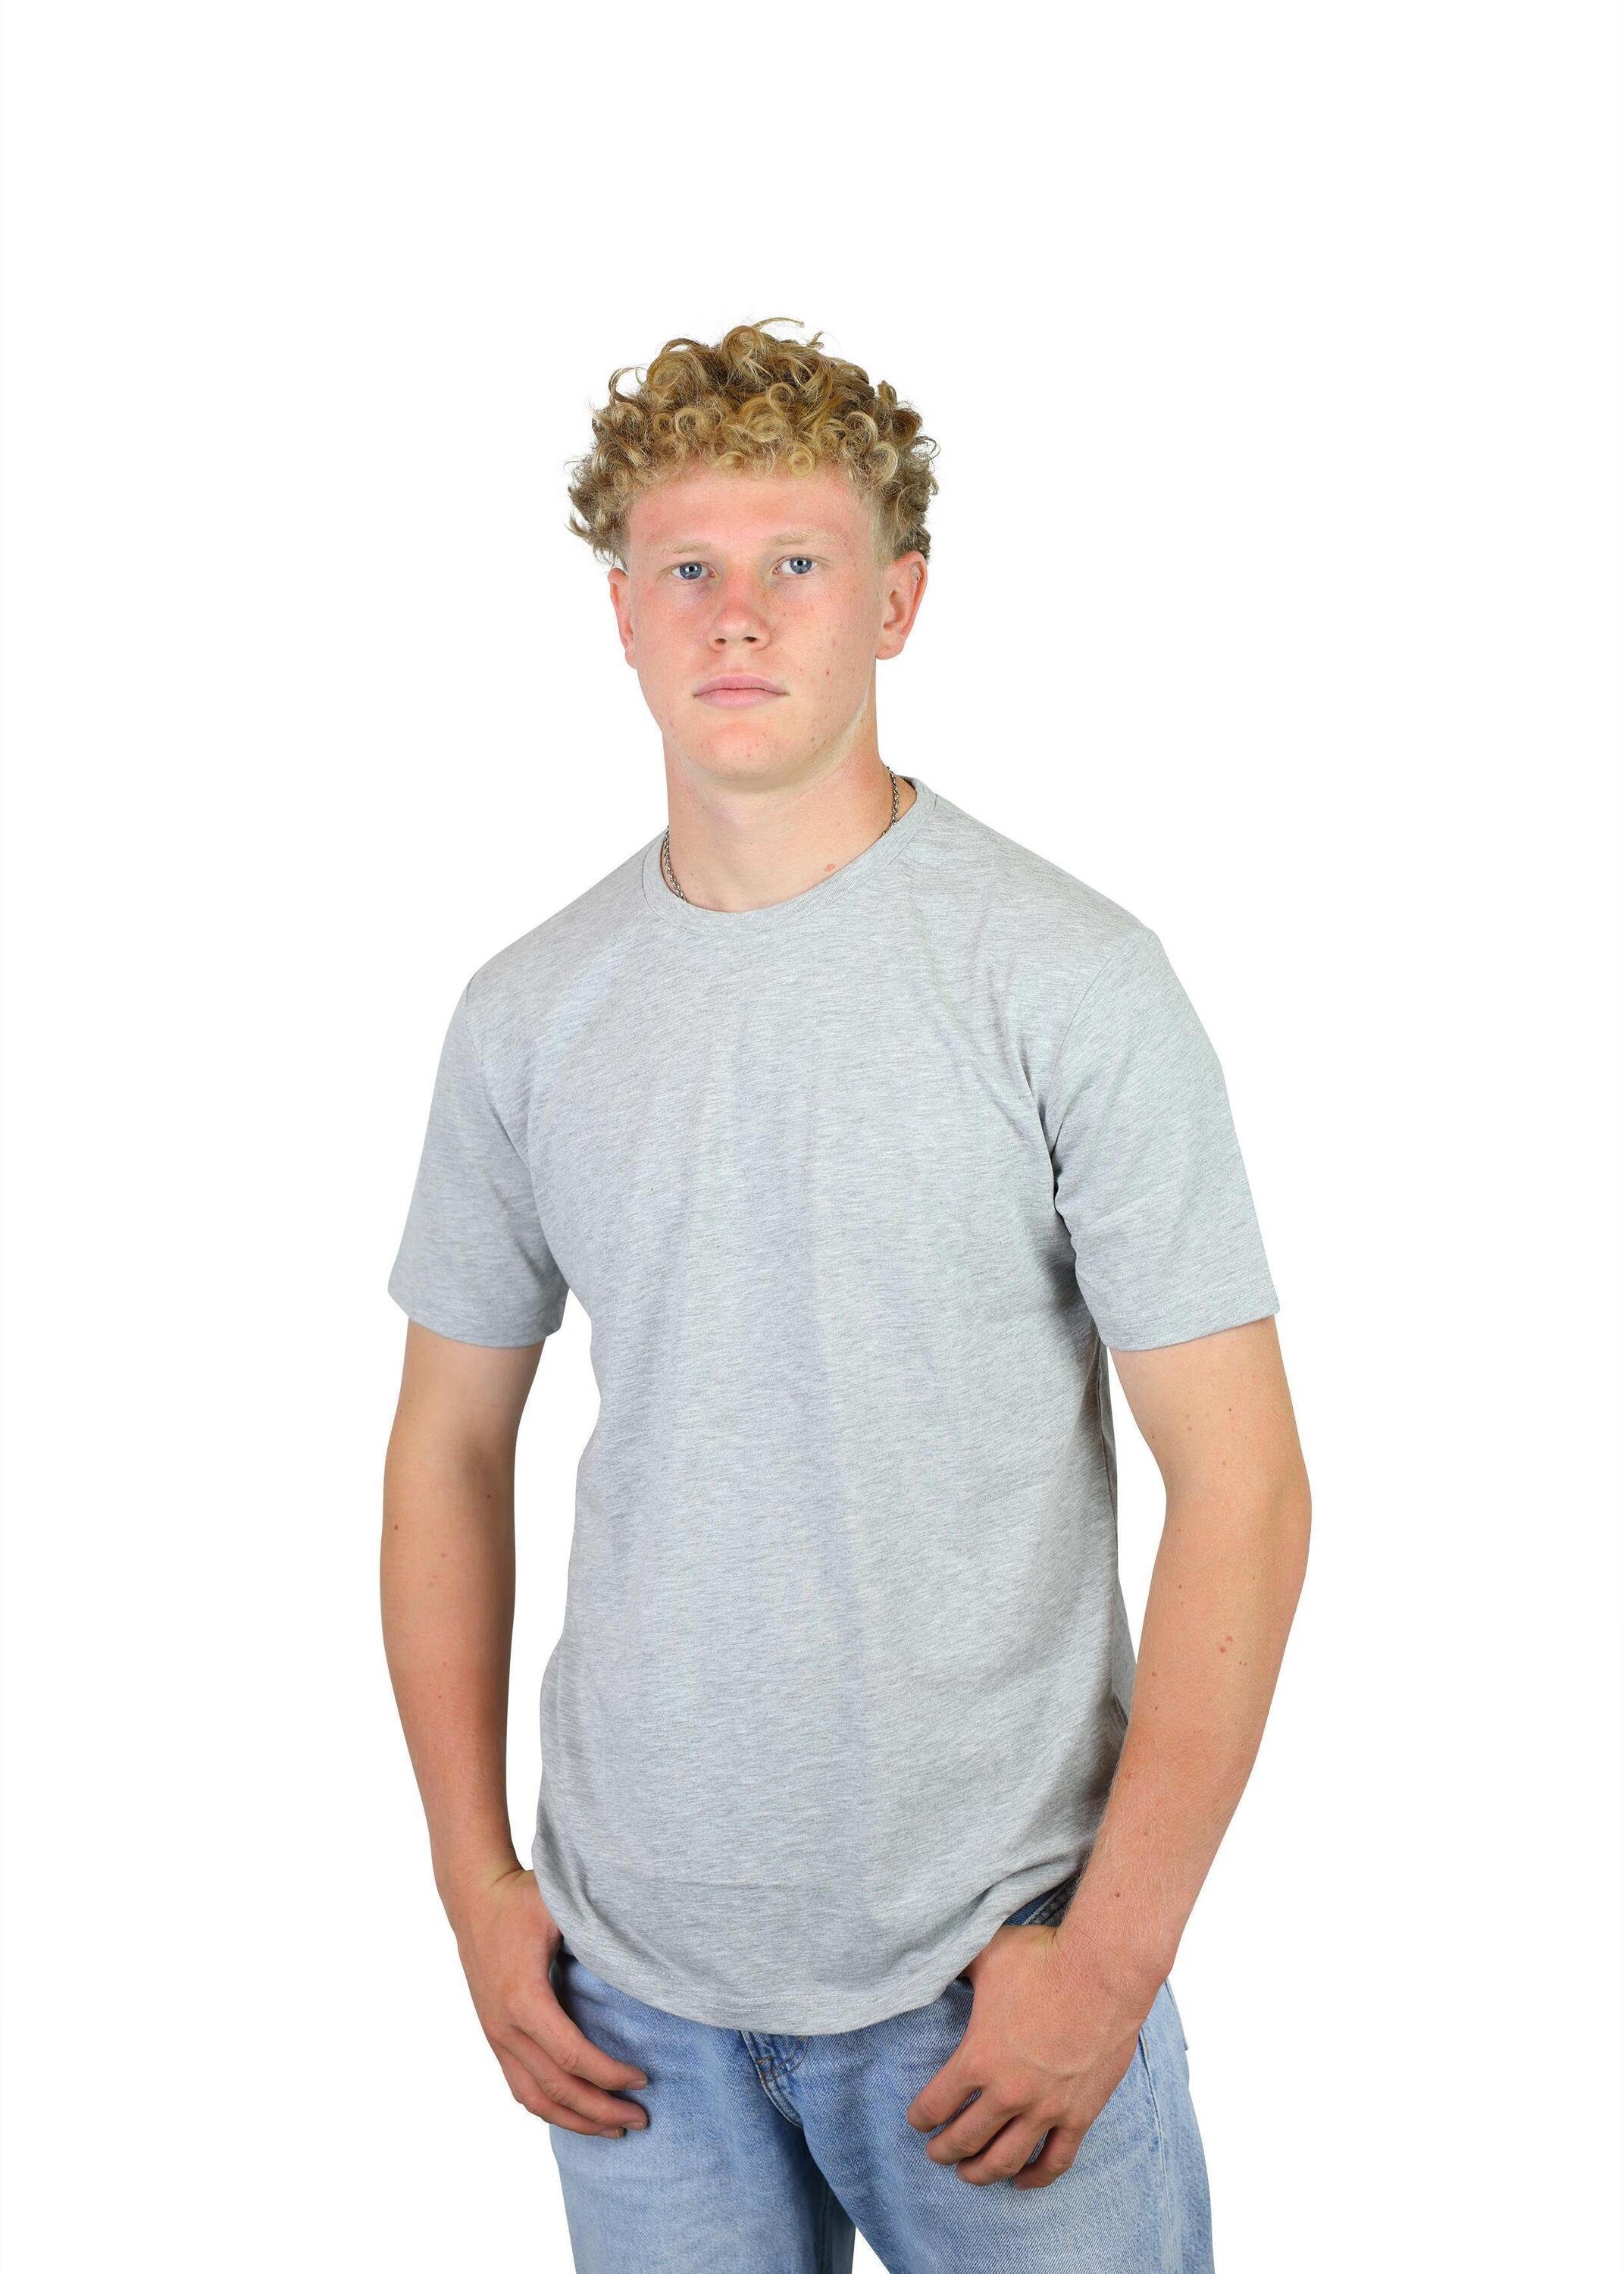 aus Kinder, FuPer Karl T-Shirt Grey Fußball, Jugend Baumwolle, für